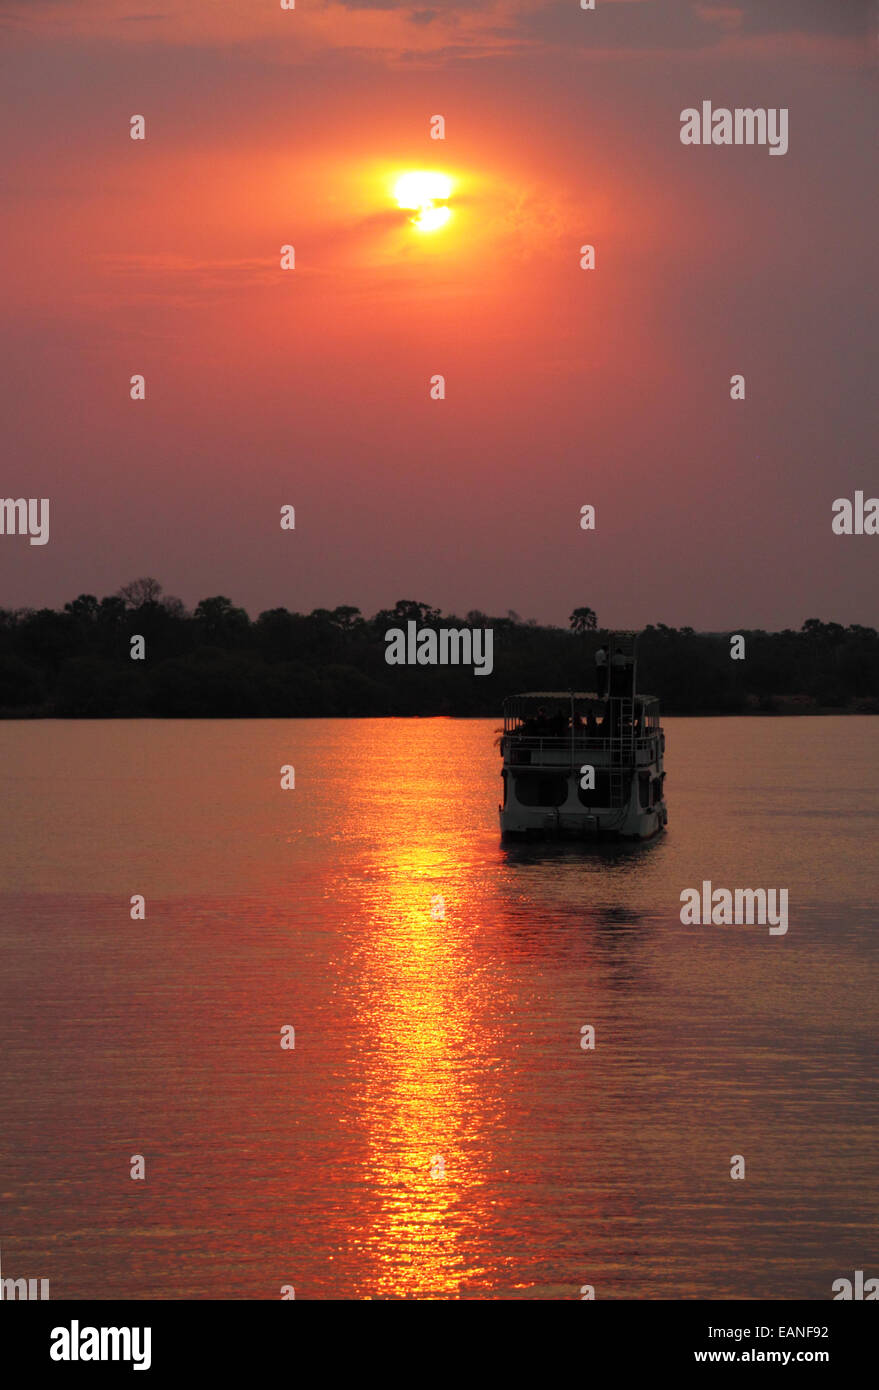 Un bateau de croisière de la rivière africaine silhouette sur le soleil couchant. Banque D'Images